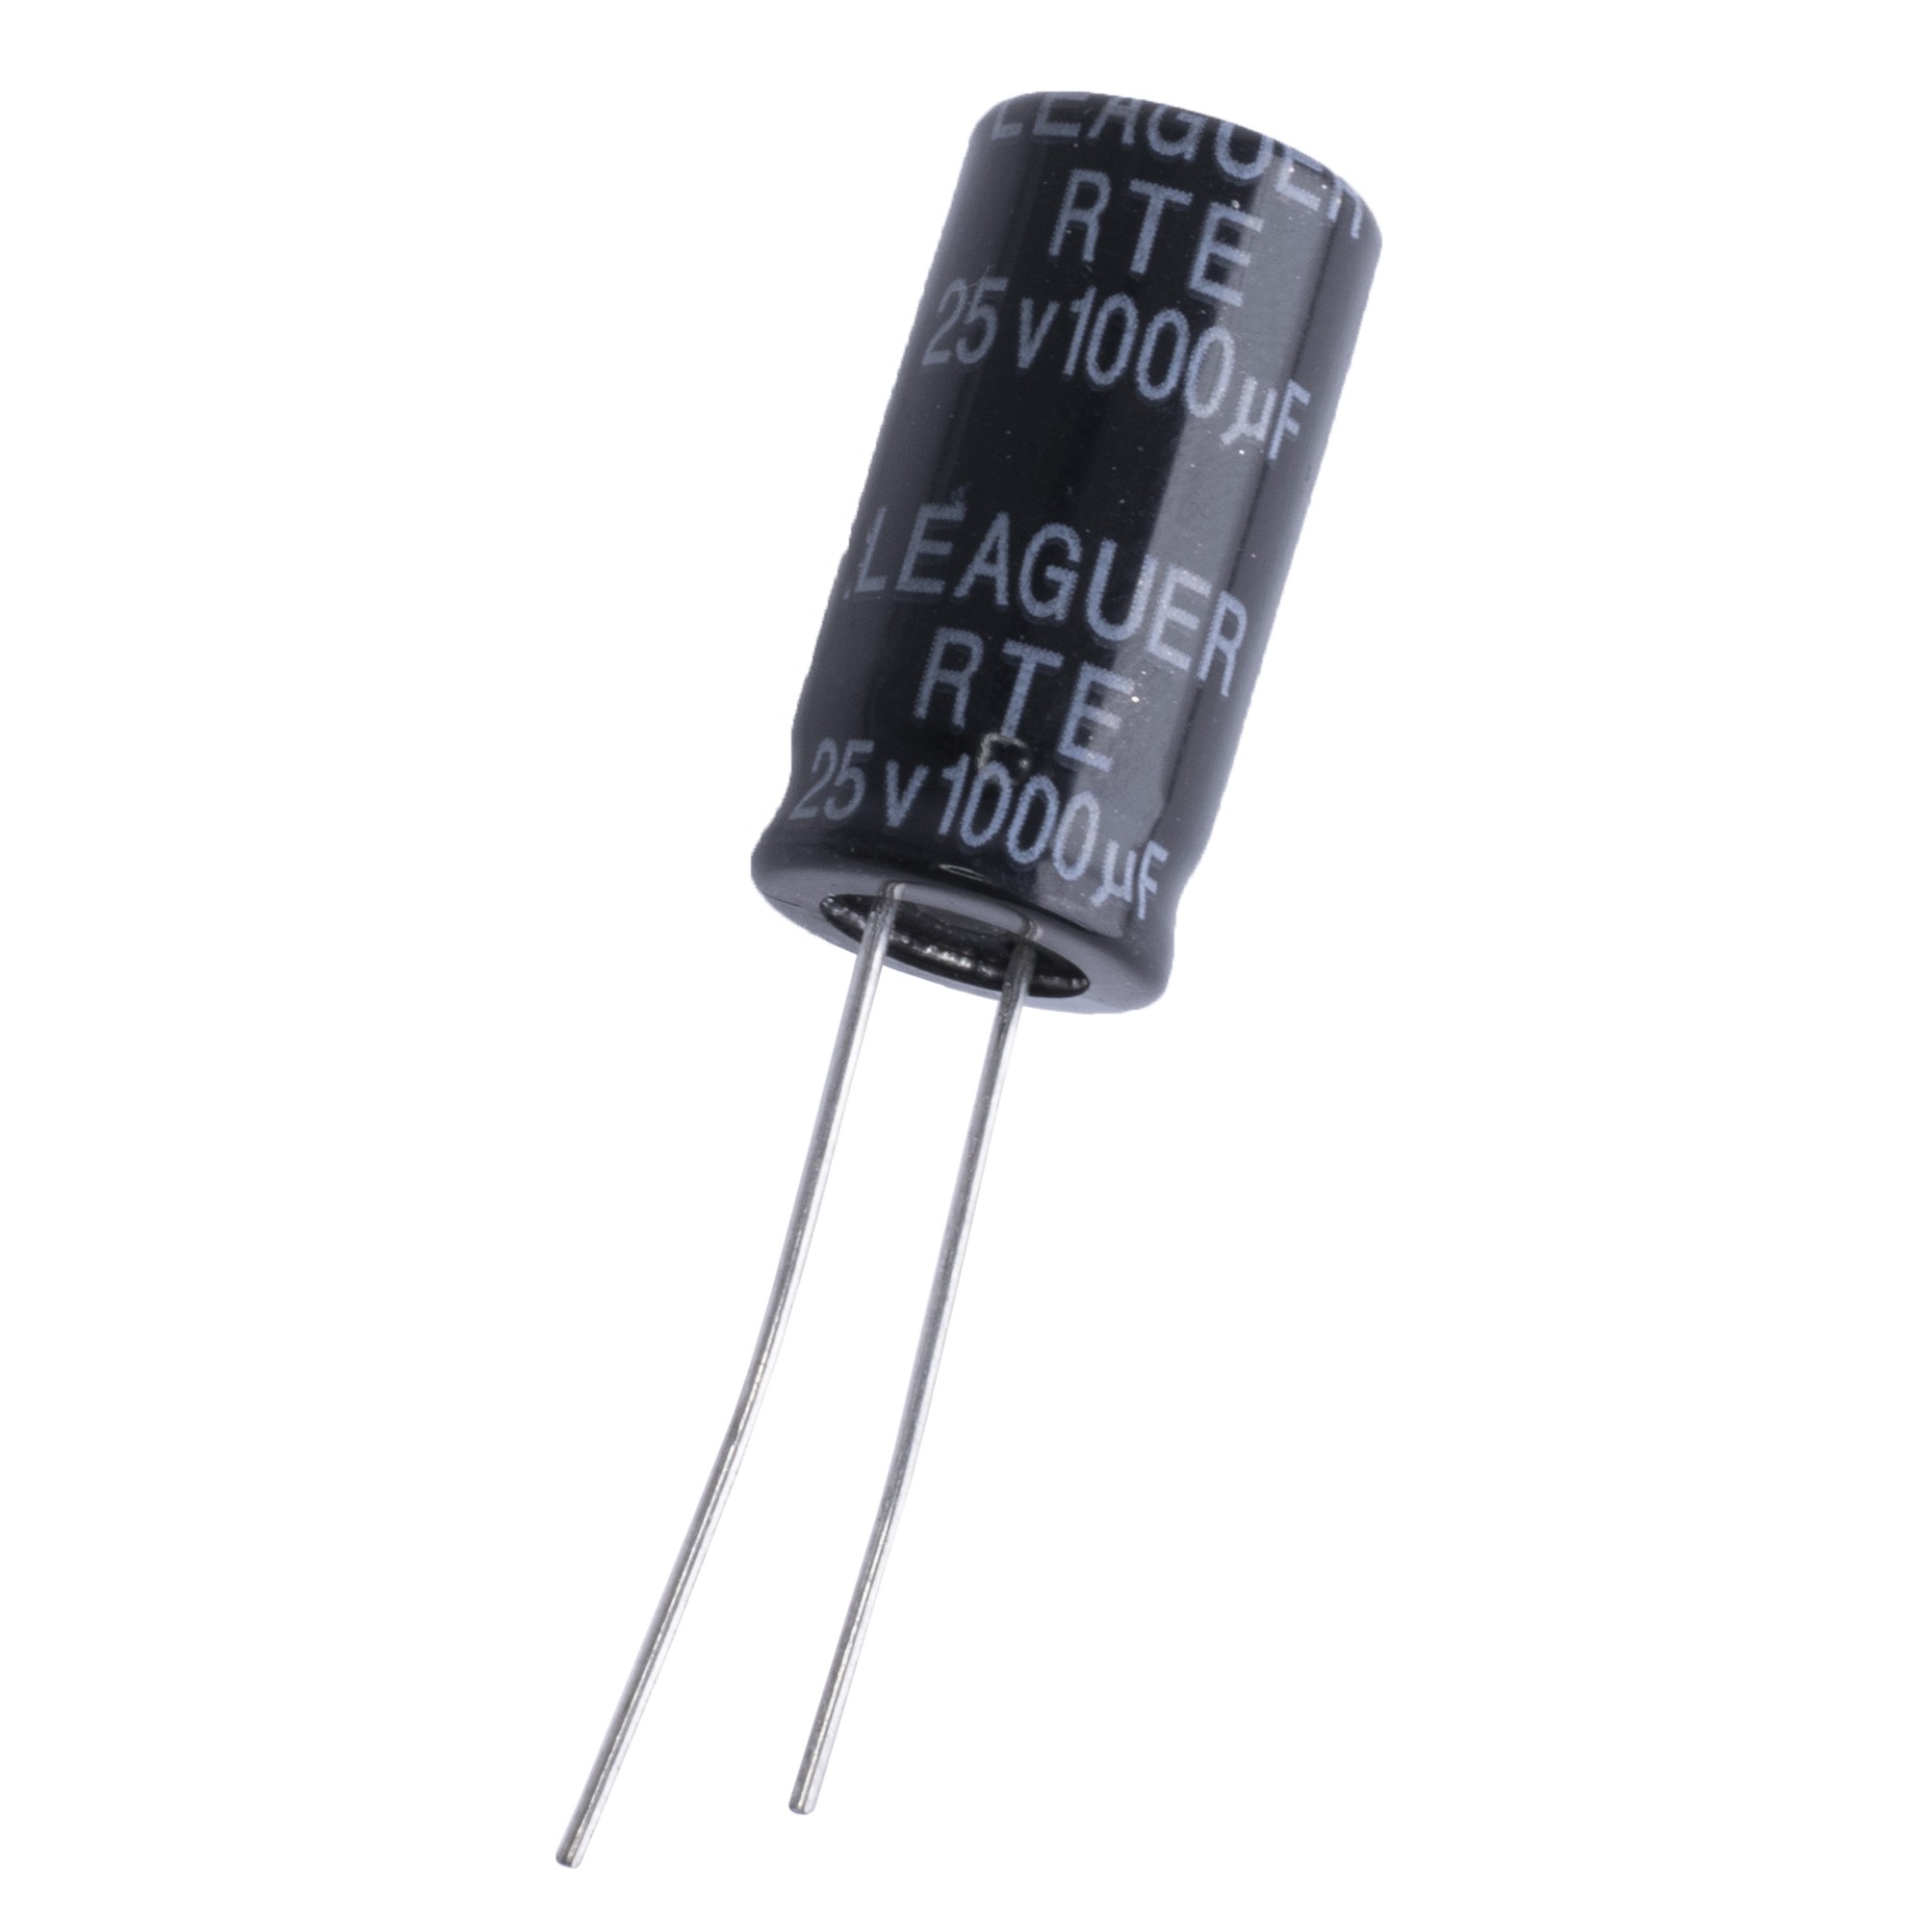 1000uF 25V RTE 10x20mm (low esr) (RTE1E102M1020F-LEAGUER) (электролитический конденсатор низкоимпедансный)